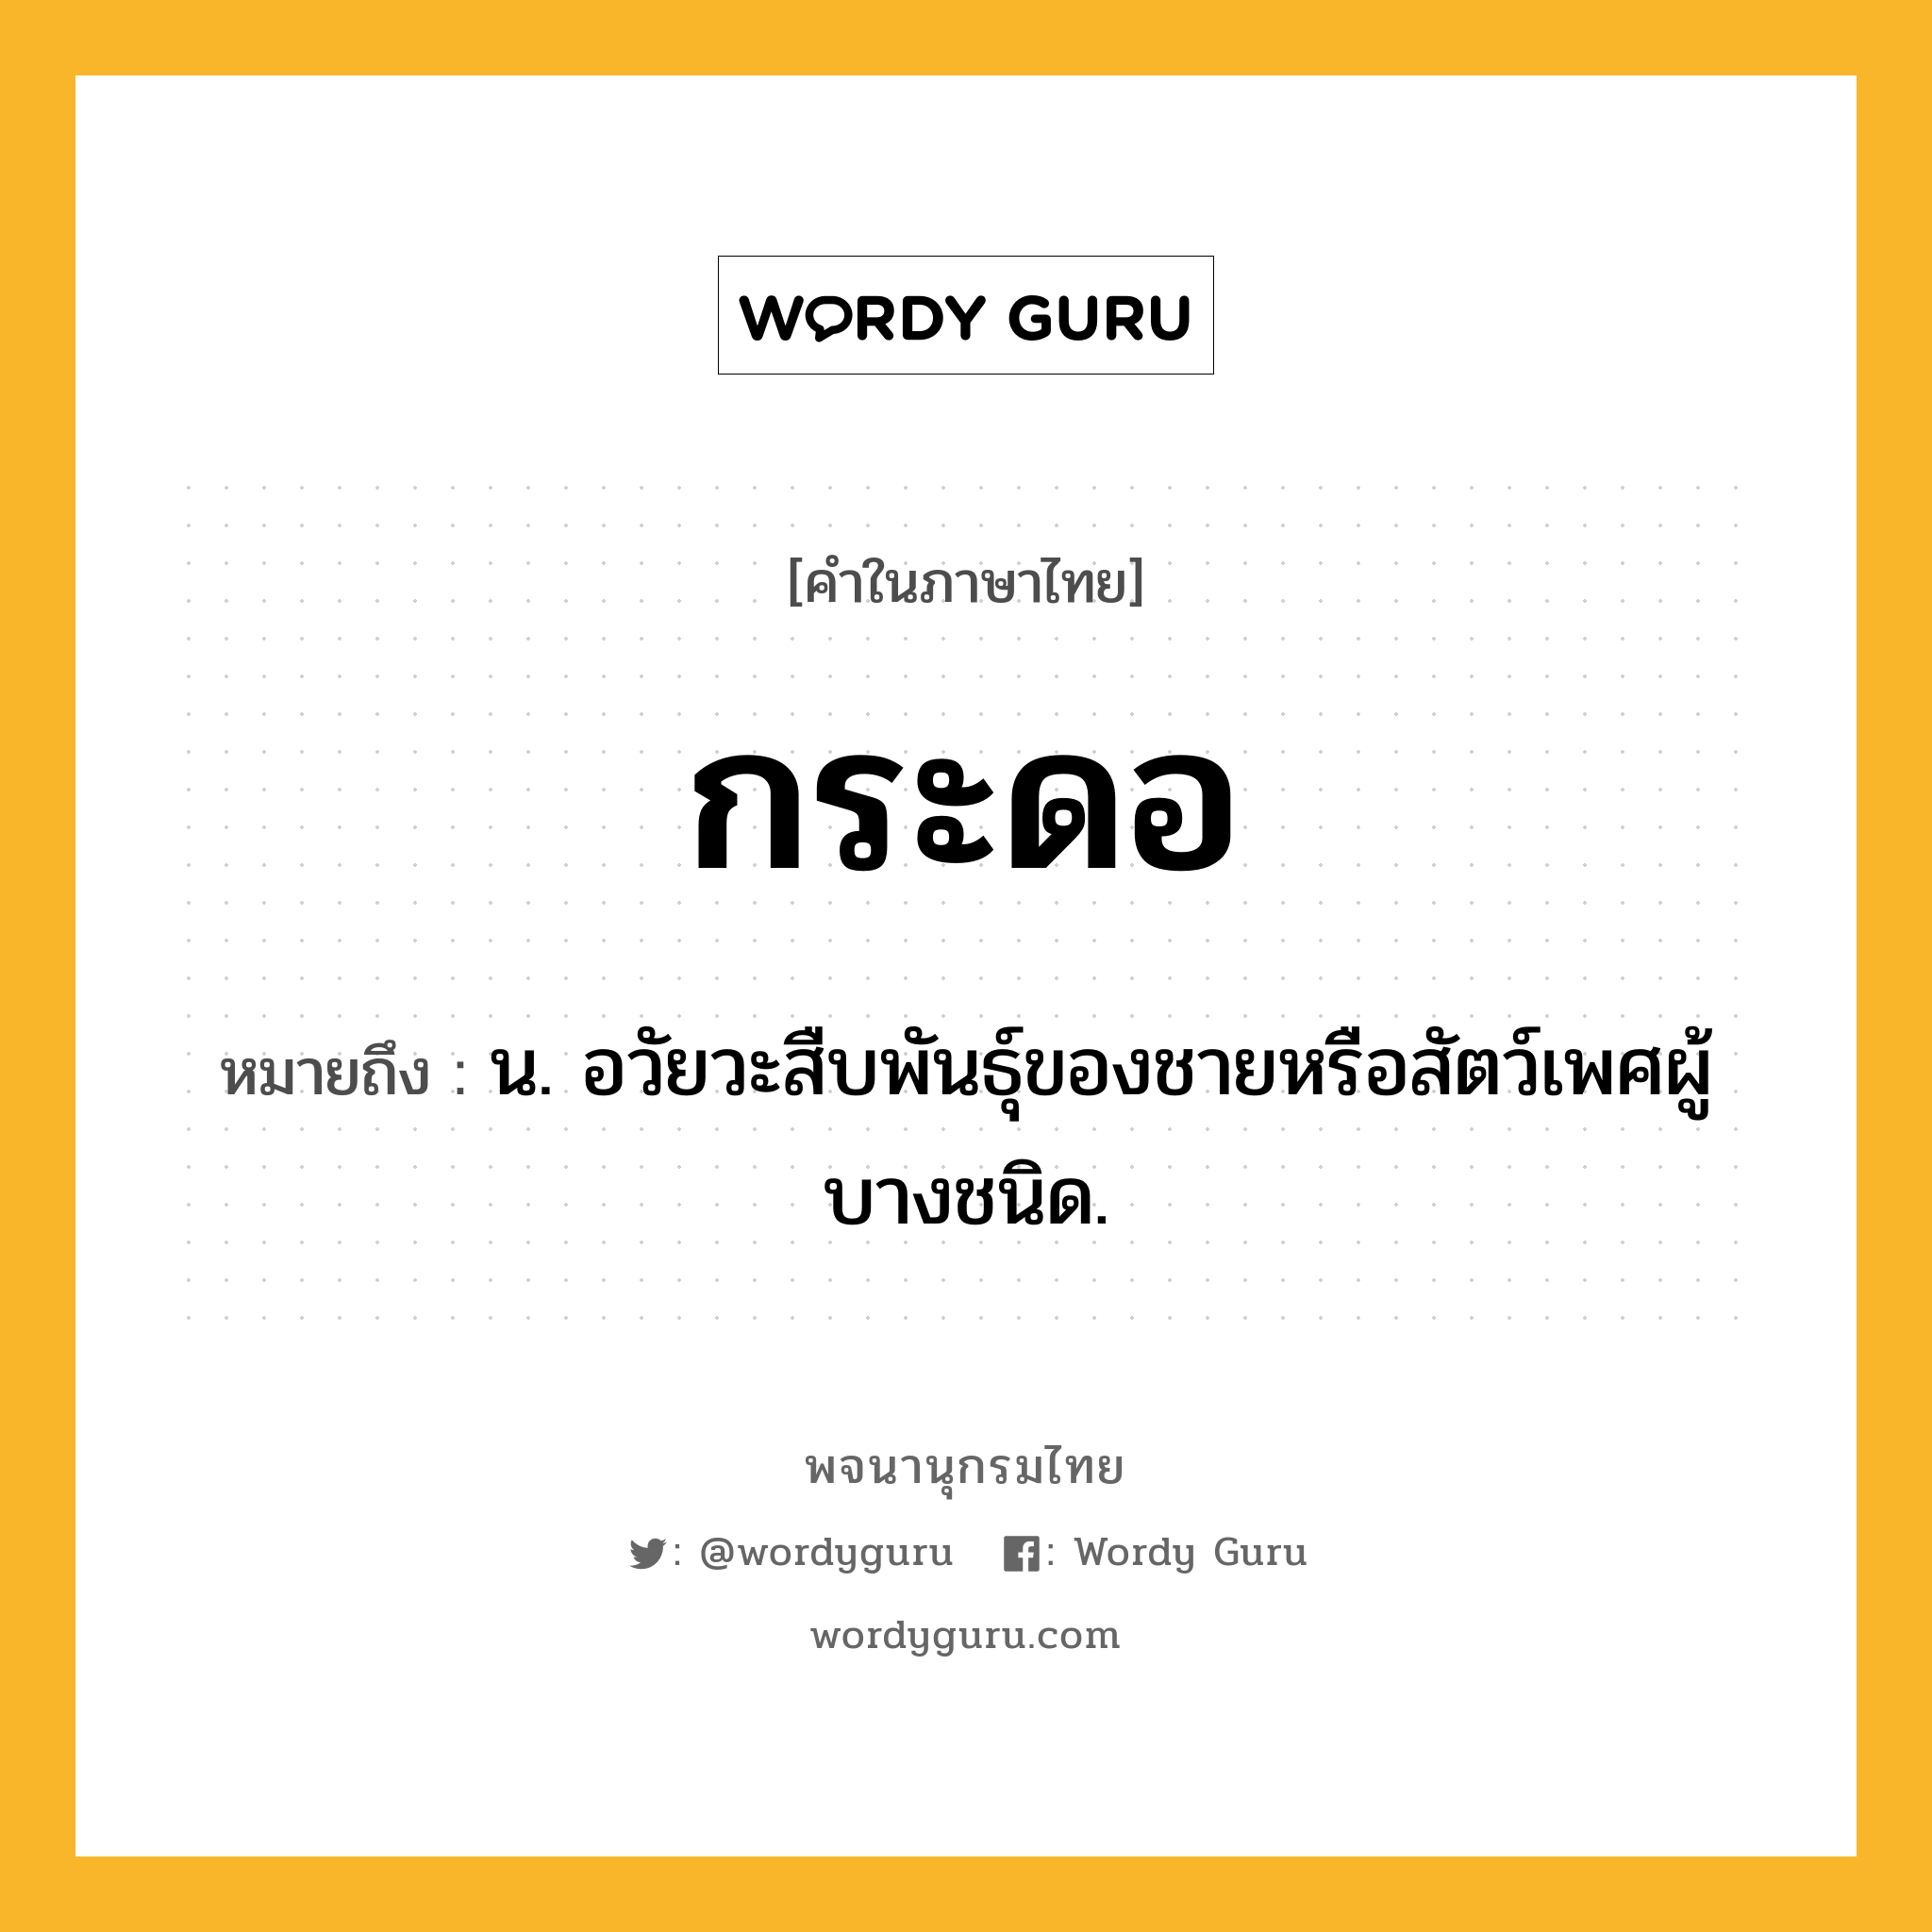 กระดอ หมายถึงอะไร?, คำในภาษาไทย กระดอ หมายถึง น. อวัยวะสืบพันธุ์ของชายหรือสัตว์เพศผู้บางชนิด.